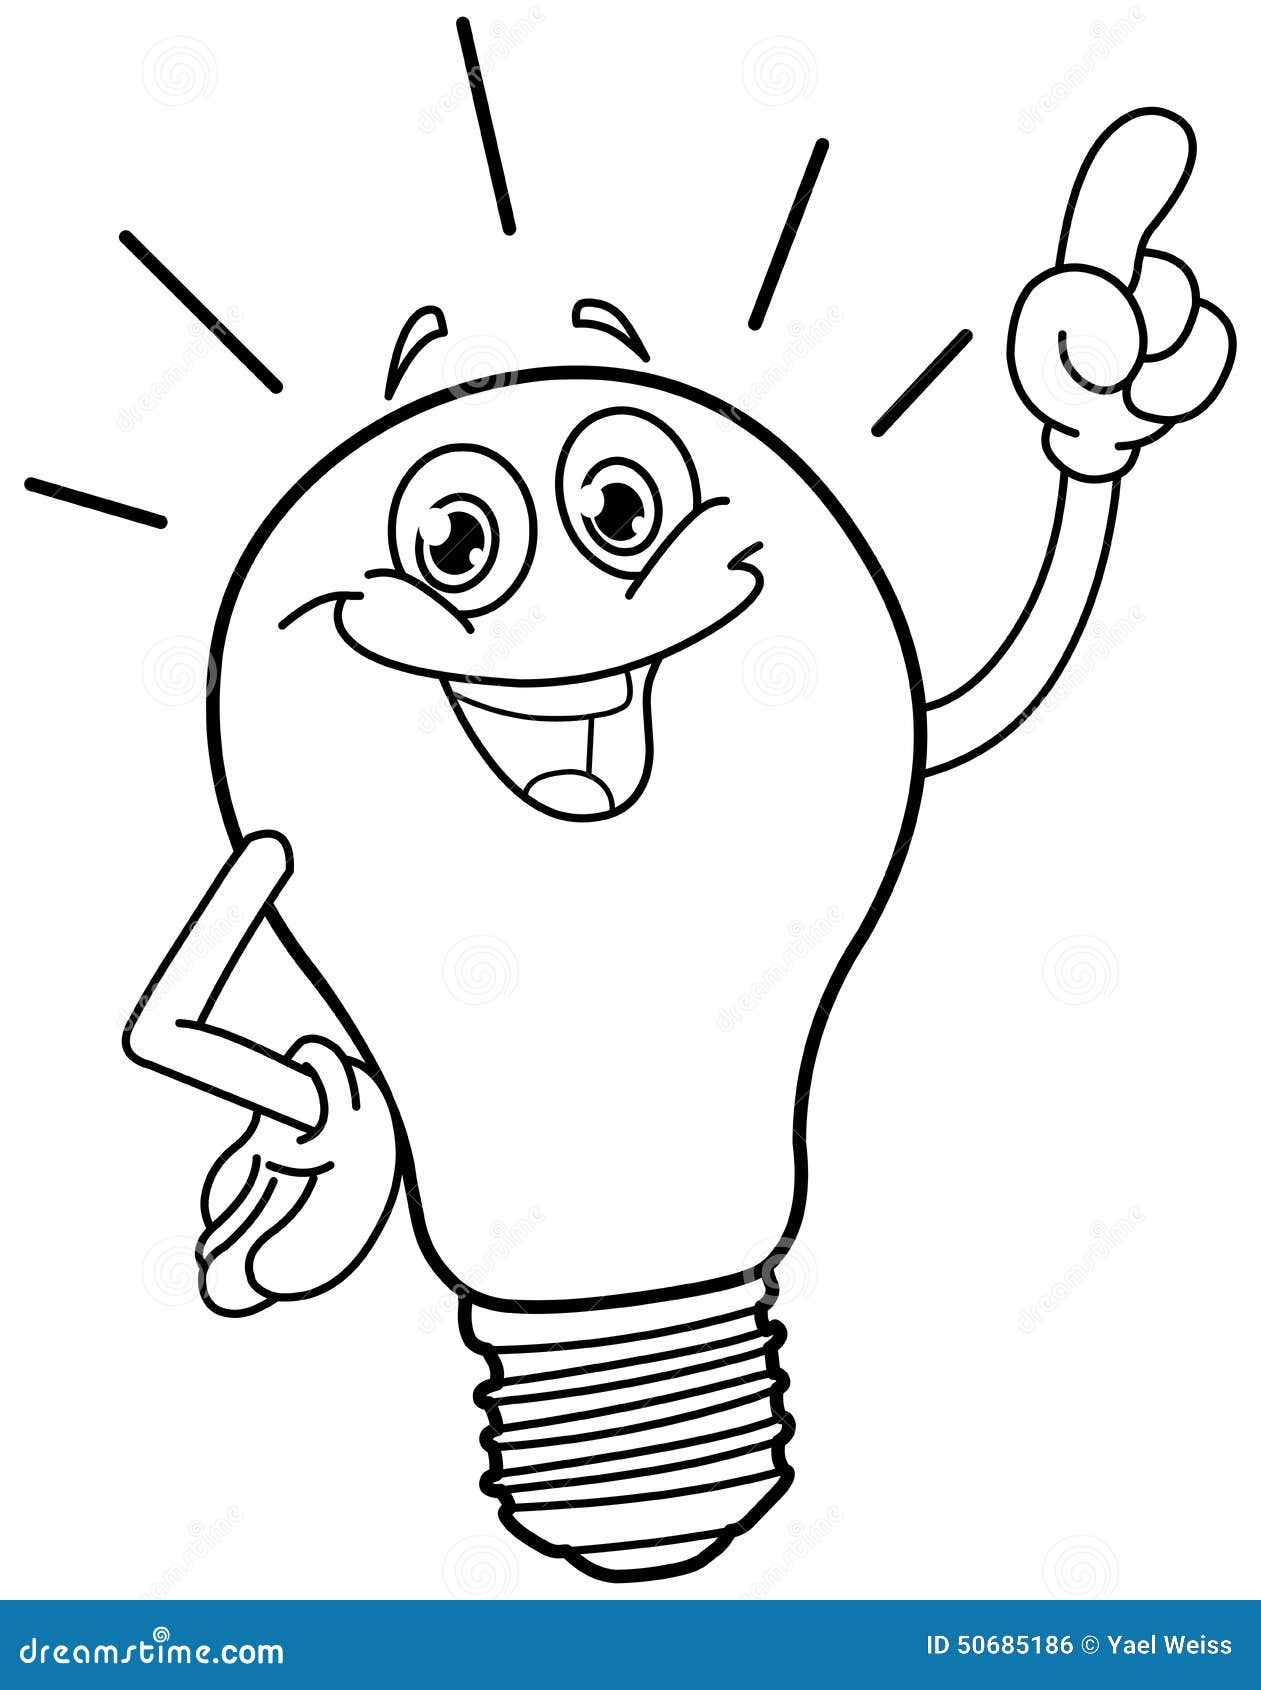 Cartoon Light Bulb Stock Illustrations – 35,771 Cartoon Light Bulb Stock  Illustrations, Vectors & Clipart - Dreamstime